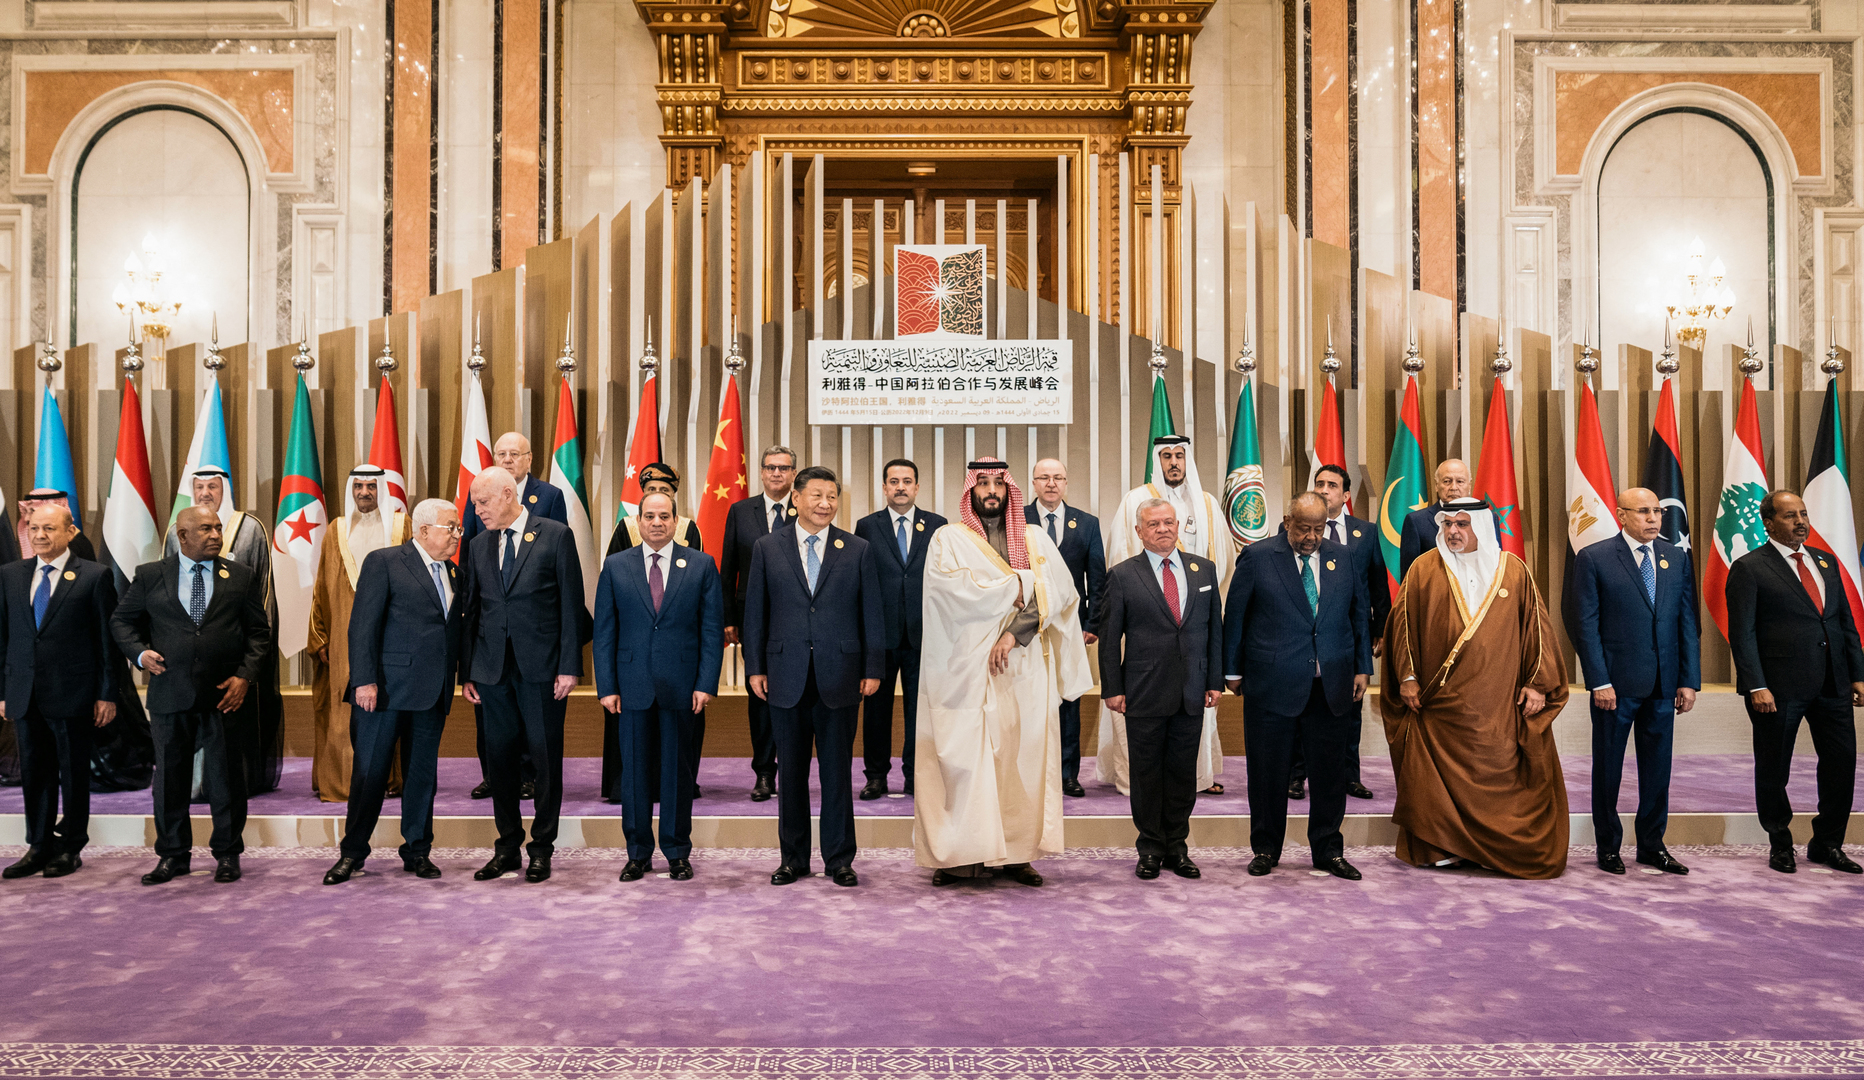 الجامعة العربية:  القمة العربية - الصينية قفزة في تاريخ العلاقات وليست موجهة ضد أحد